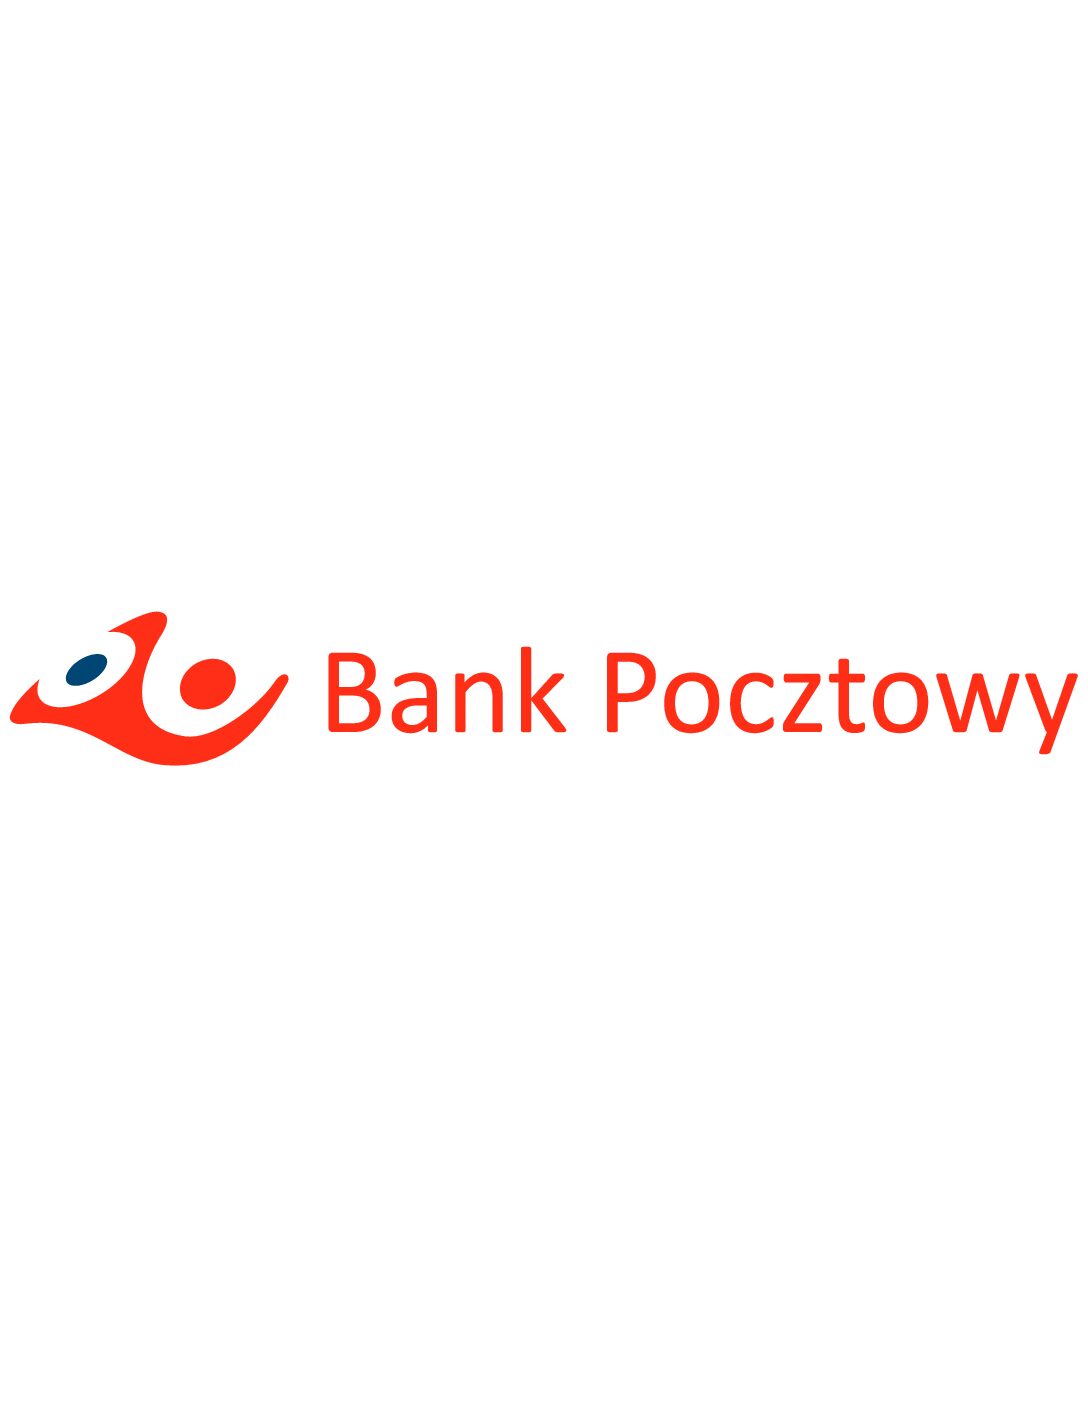 logo_Bank_Pocztowy - logo_bank_pocztowy